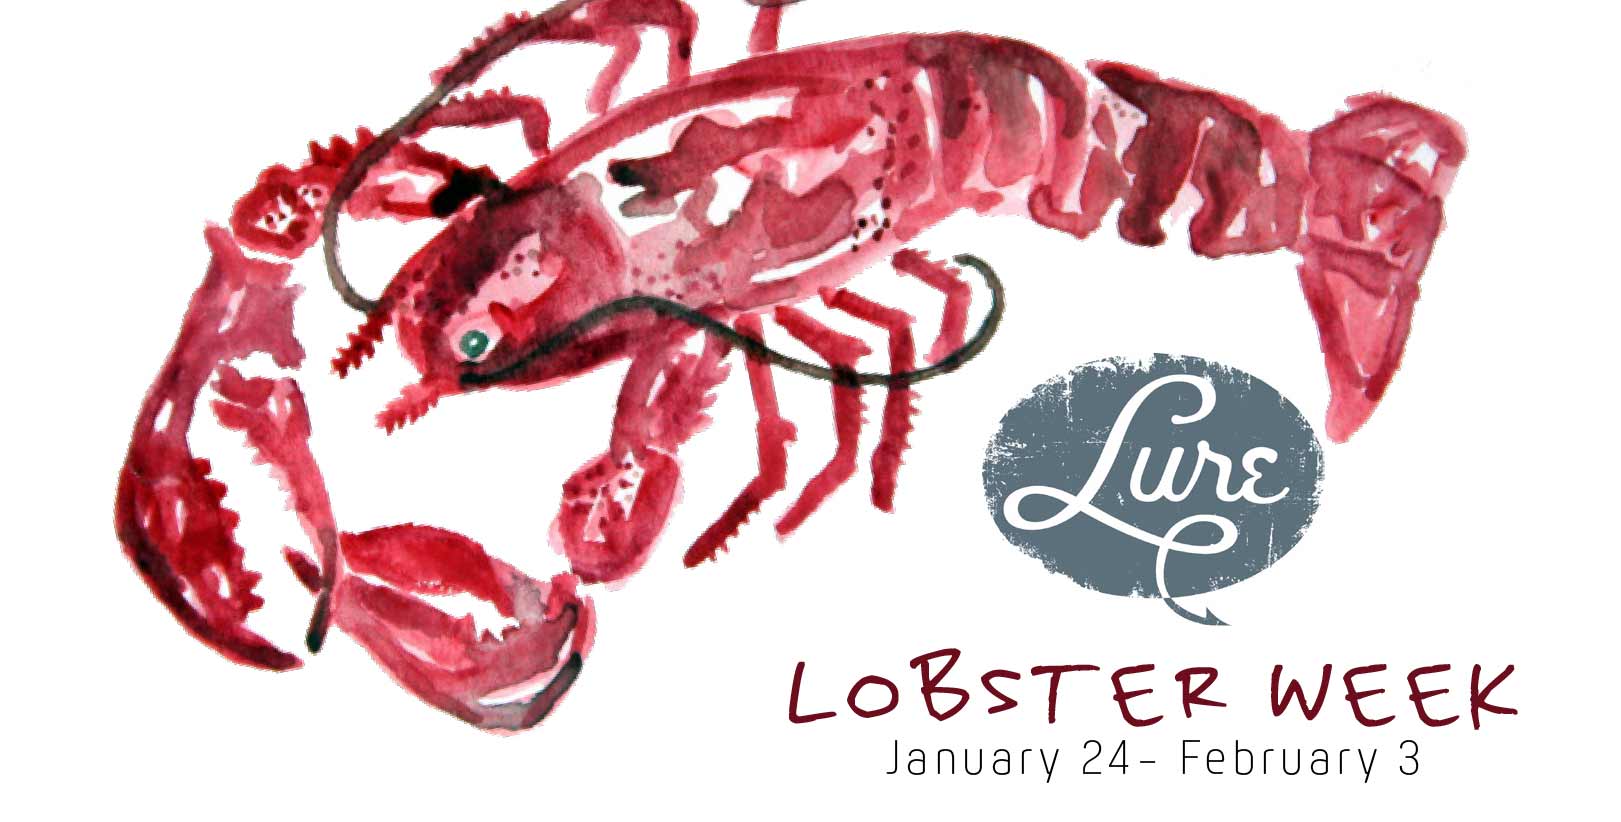 Lobster Week at Lure